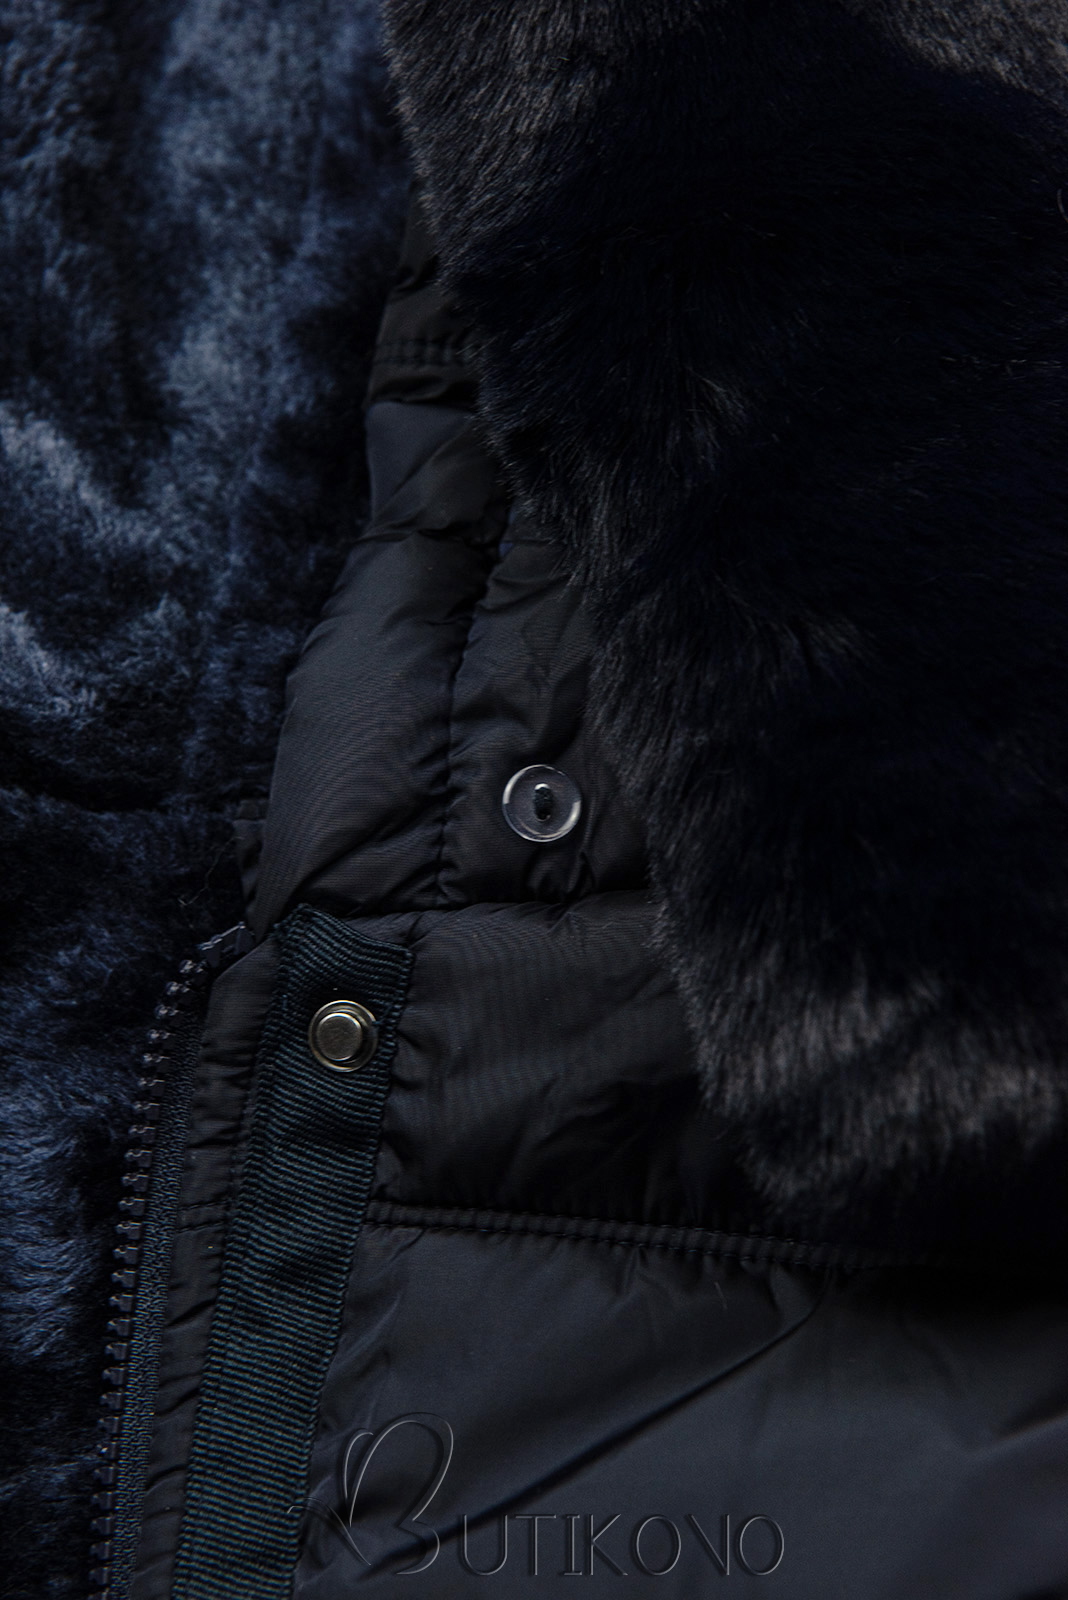 Tmavomodrá zimná bunda s plyšom a kožušinou